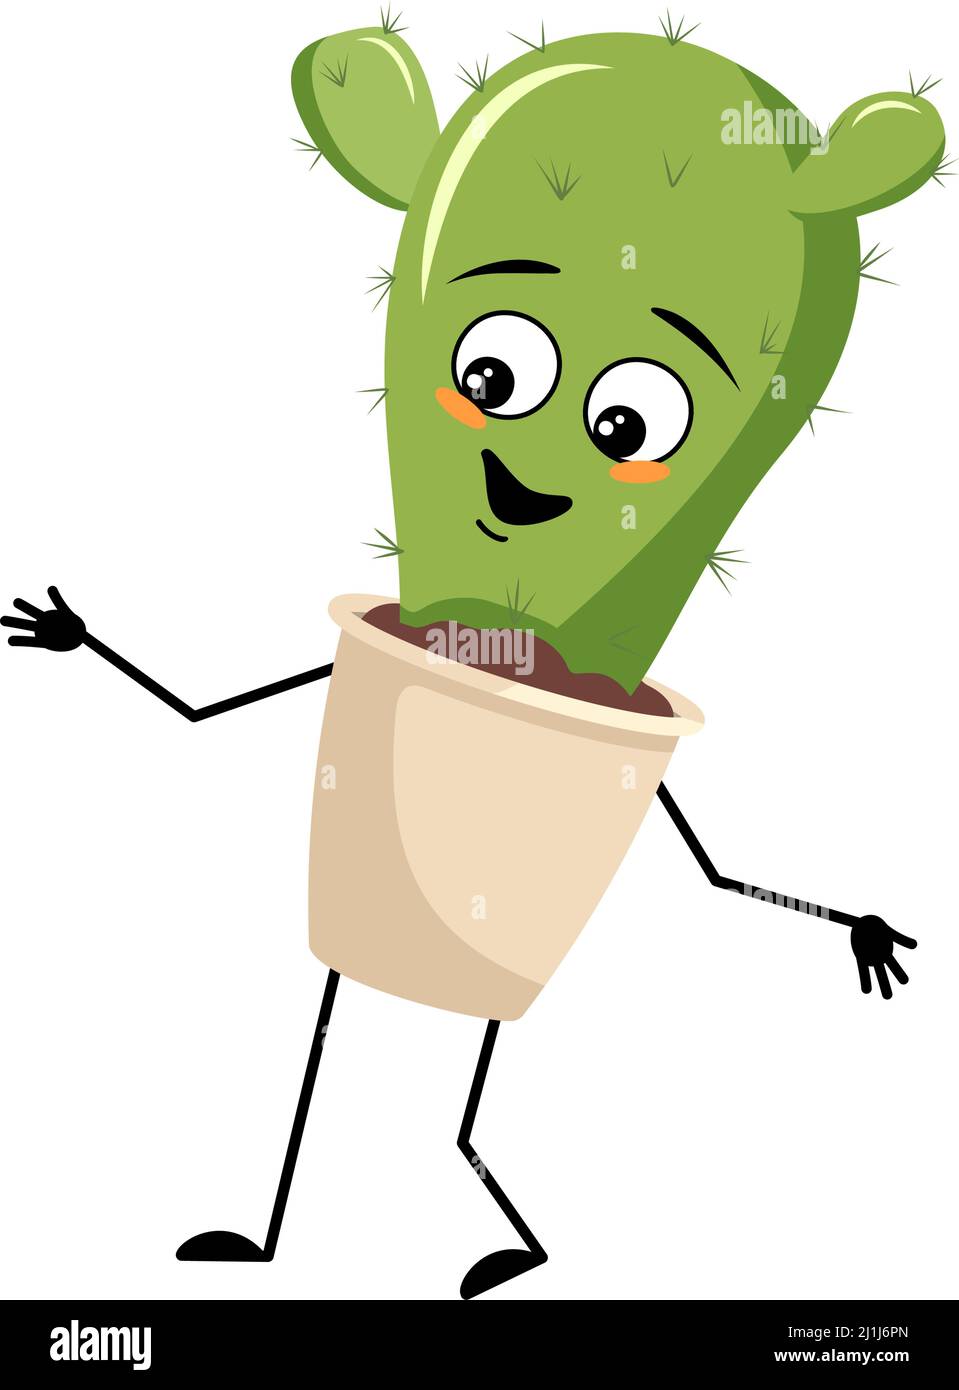 Niedlicher Kaktus-Charakter im Topf mit fröhlichen Emotionen, fröhlichem Gesicht, lächelnden Augen, Armen und Beinen. Zimmerpflanze mit witzigem Ausdruck. Vektorgrafik flach Stock Vektor